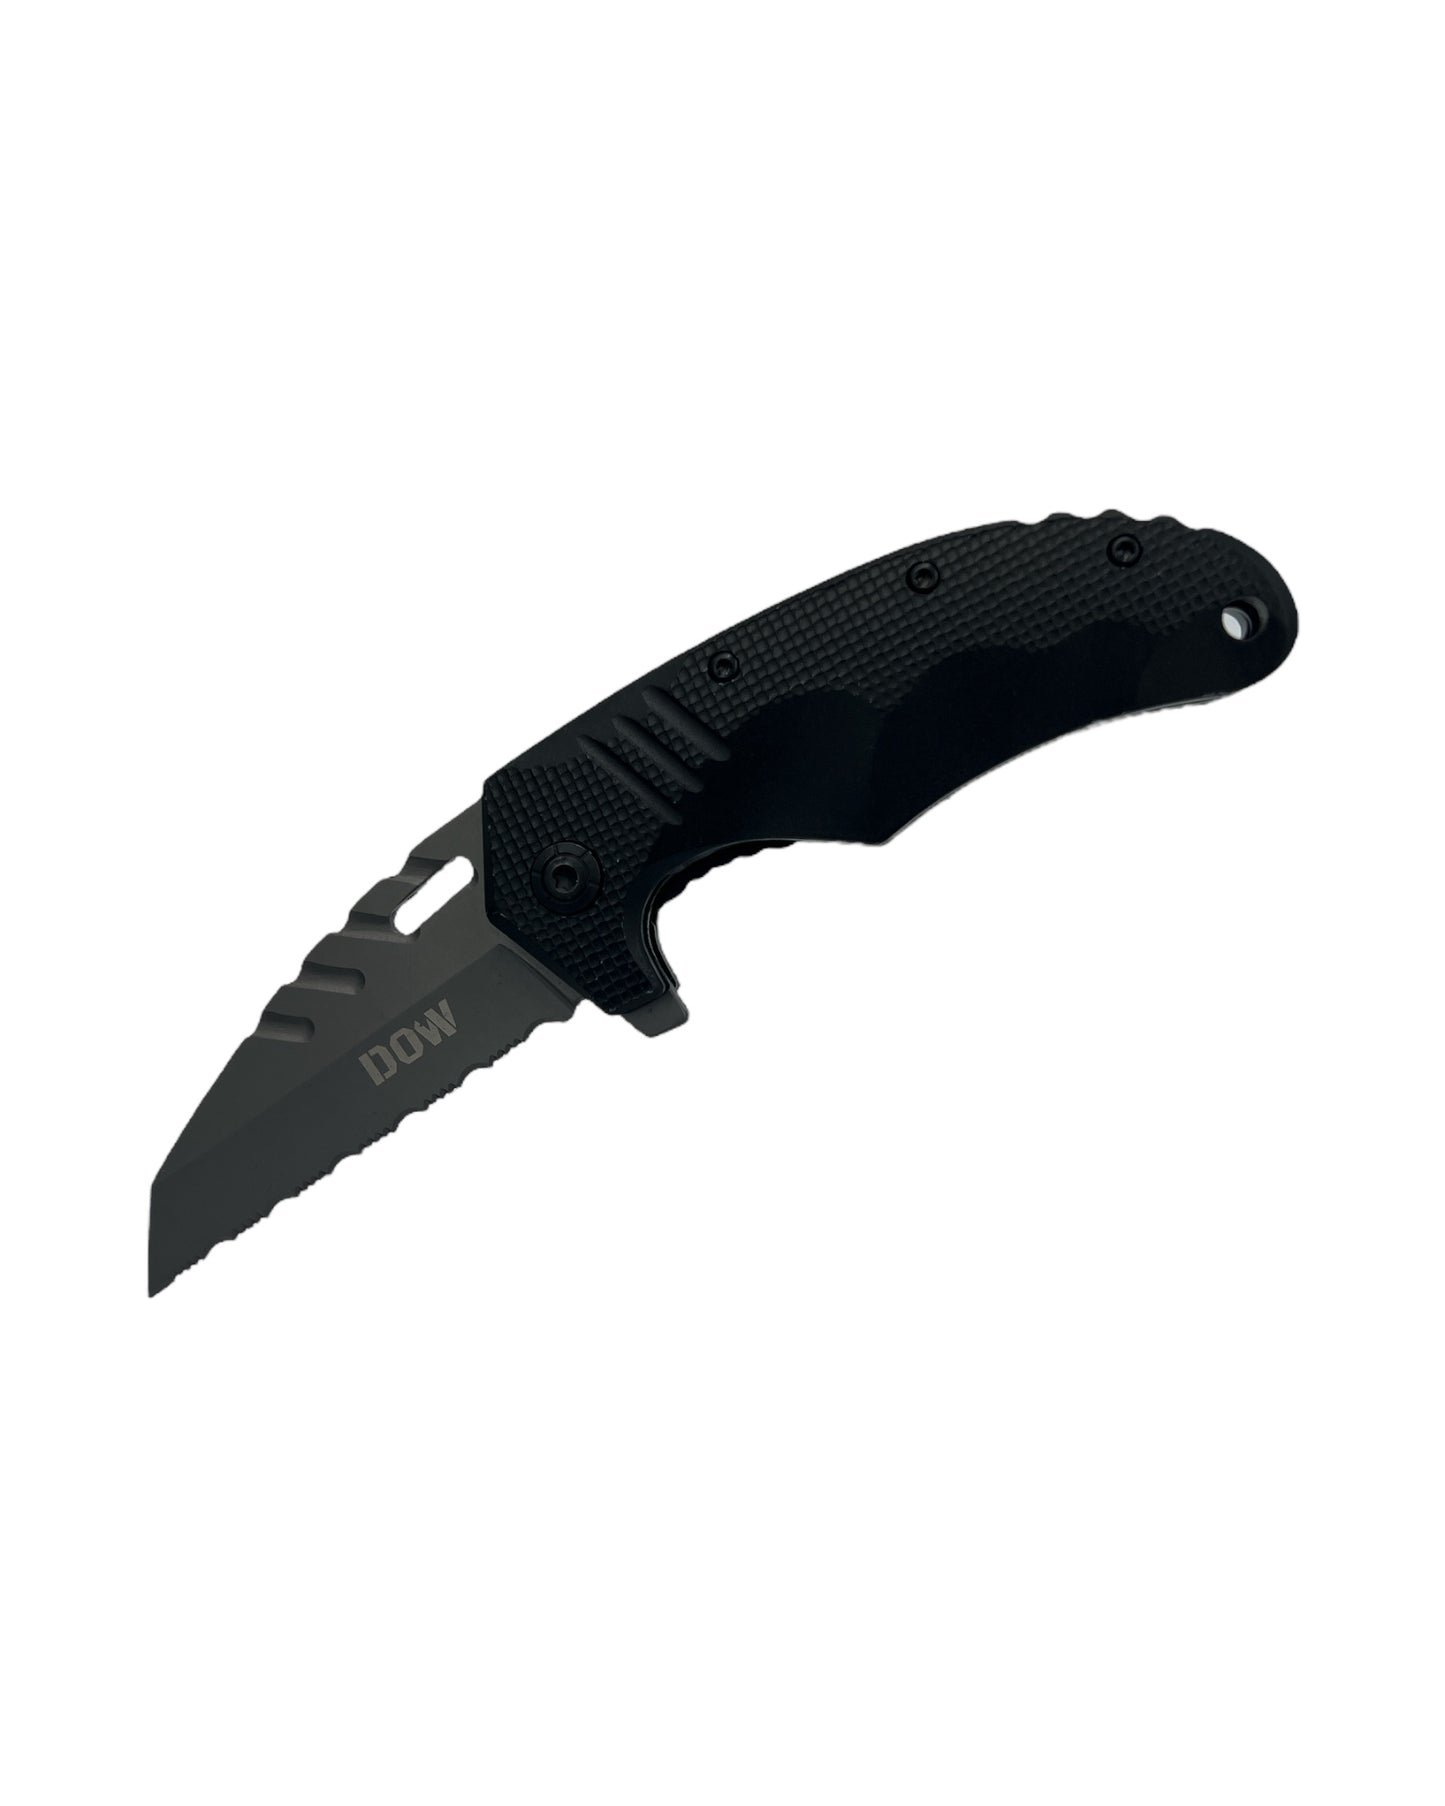 DOW RAZERBACK Knife - 3inch (8cm) Blade